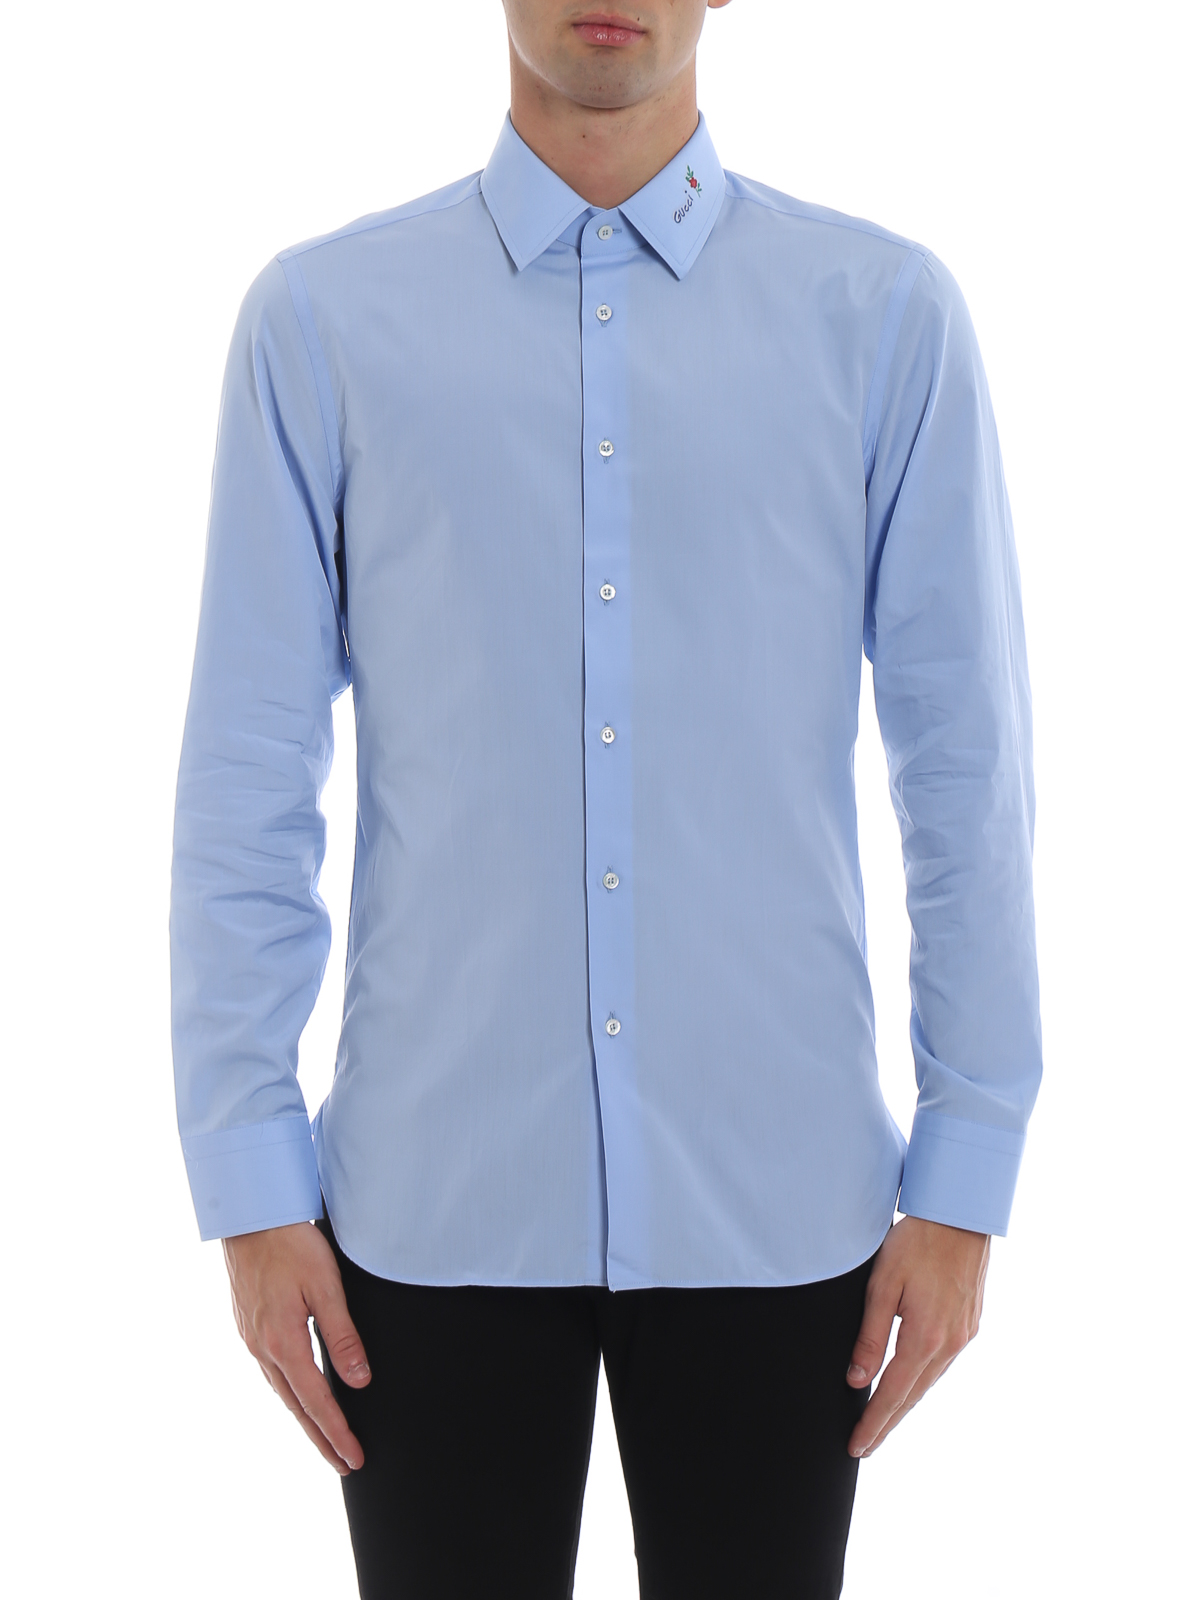 light blue gucci shirt